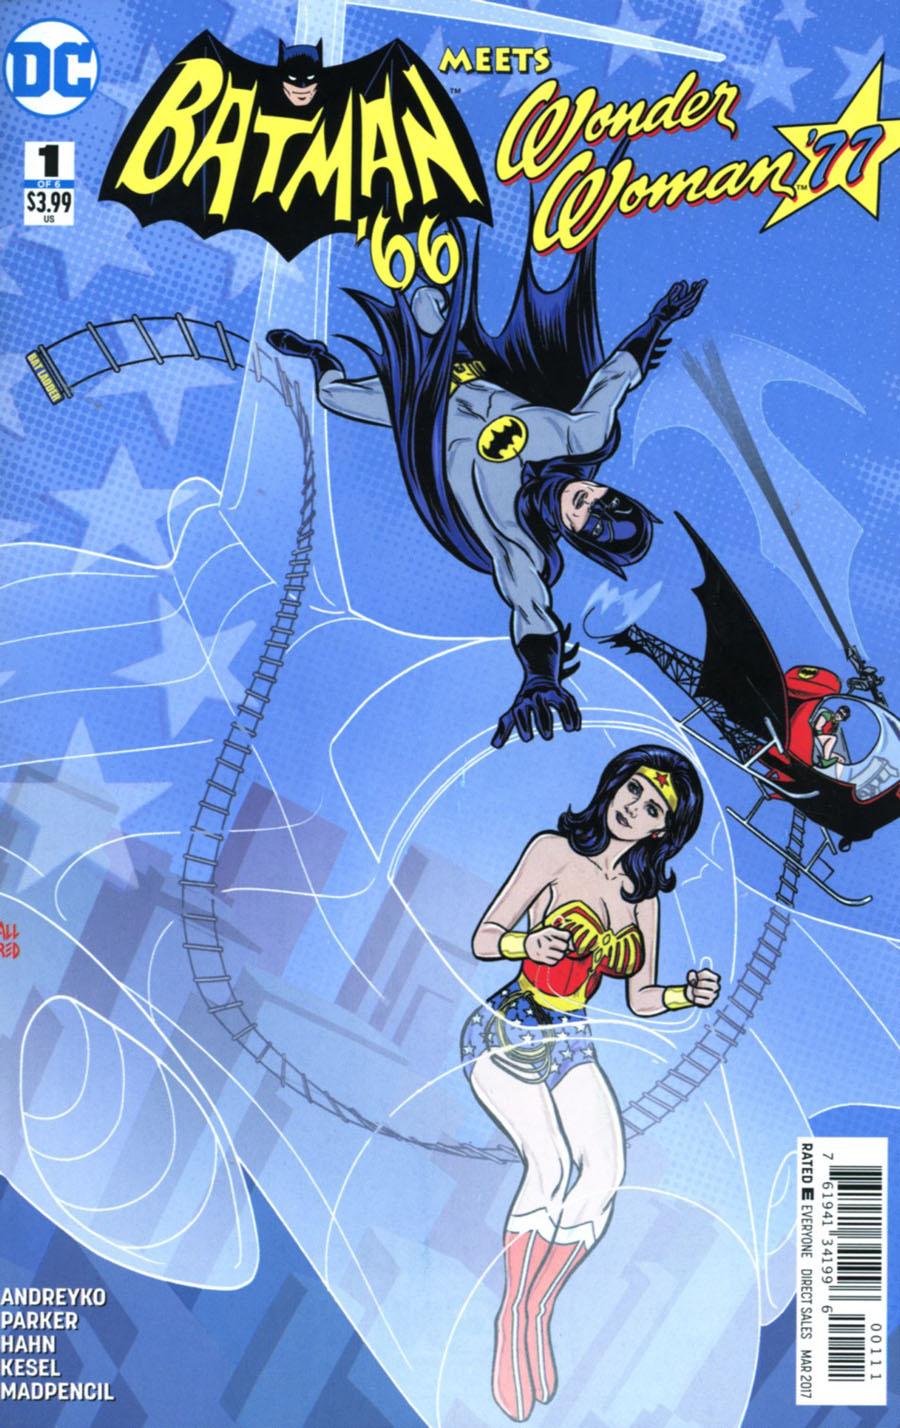 Batman 66 Meets Wonder Woman 77 Vol. 1 #1